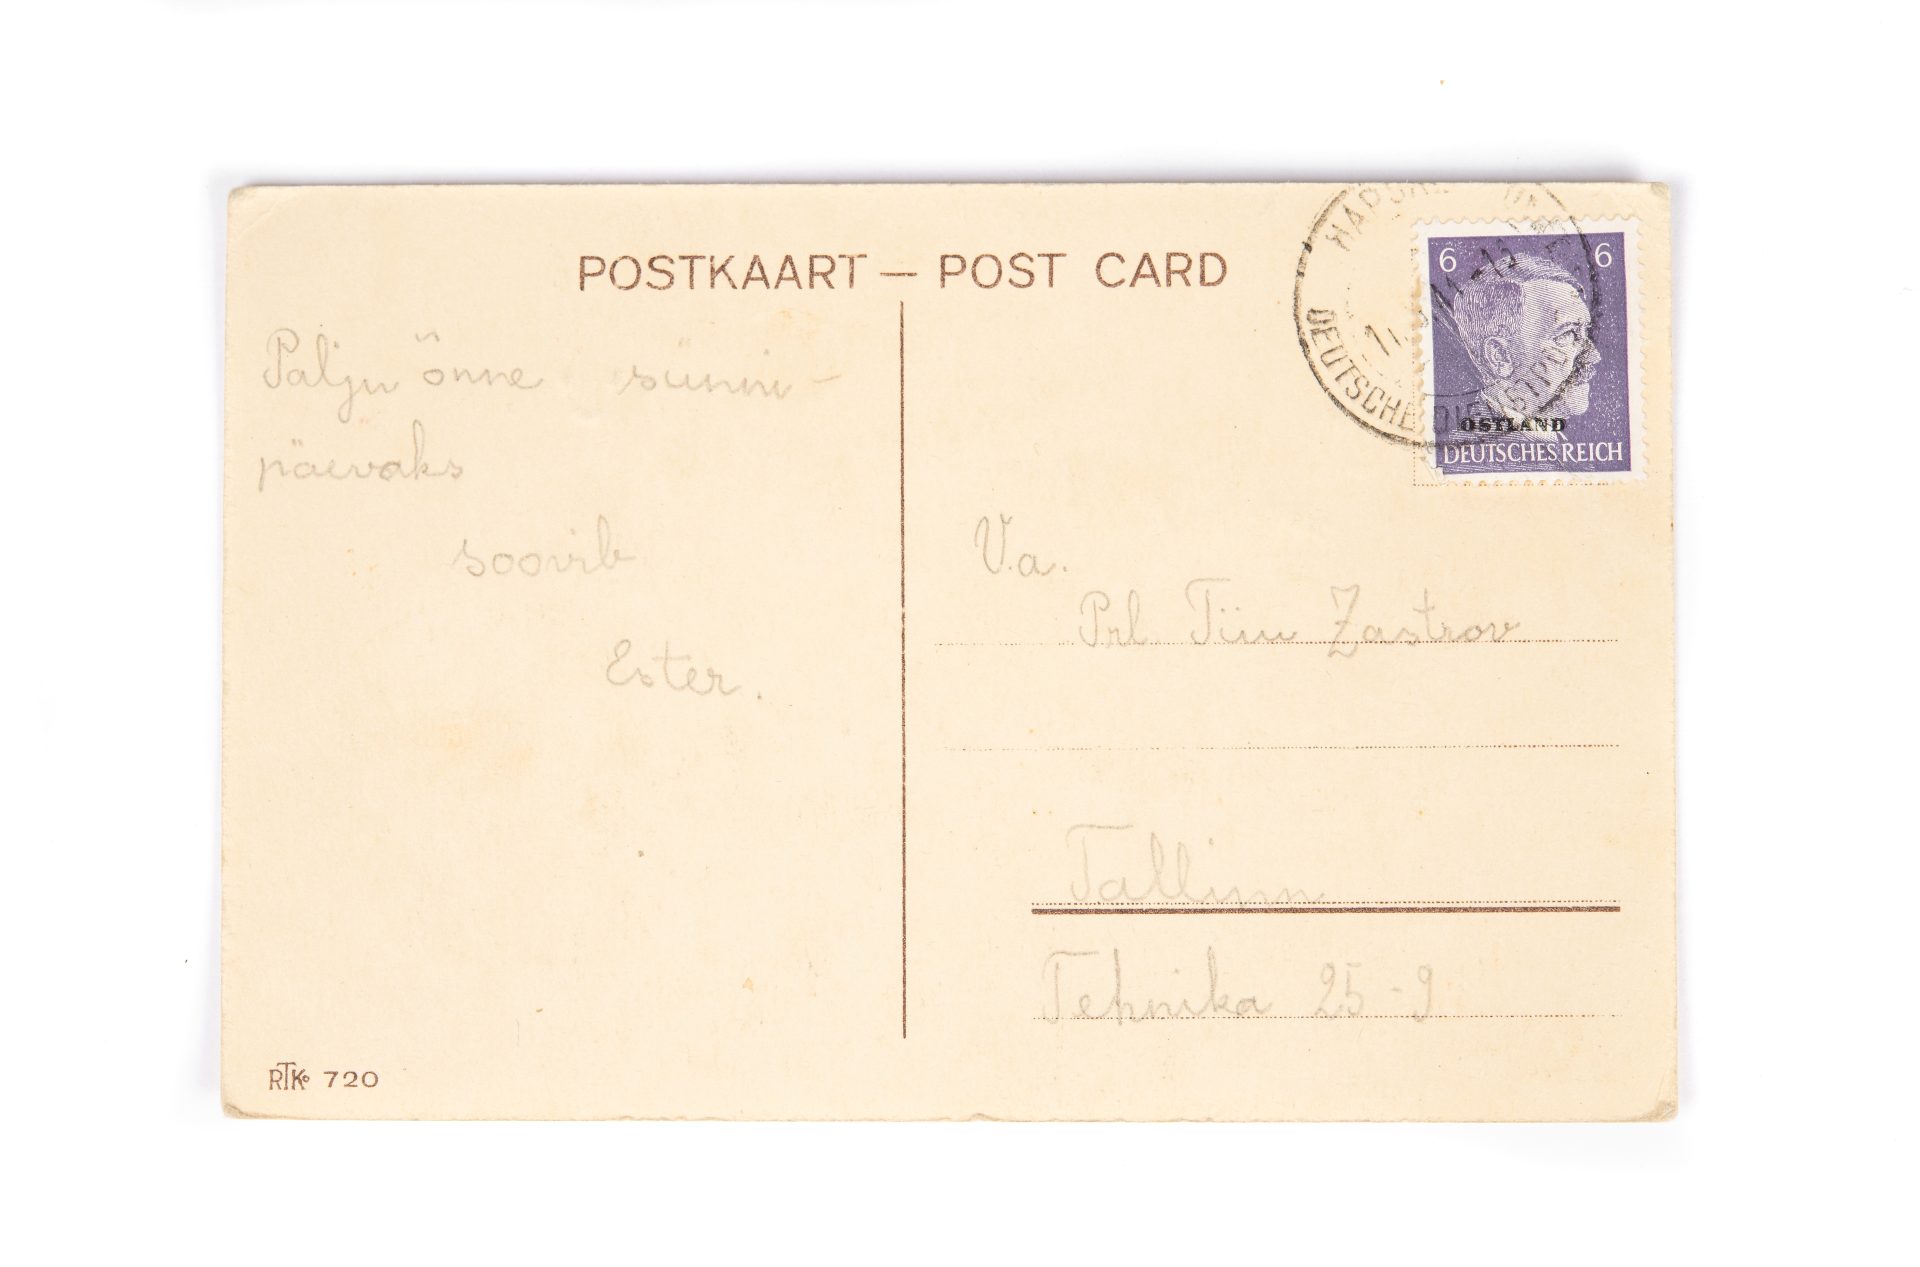 Ett gulnat vykort med kort text och frimärke